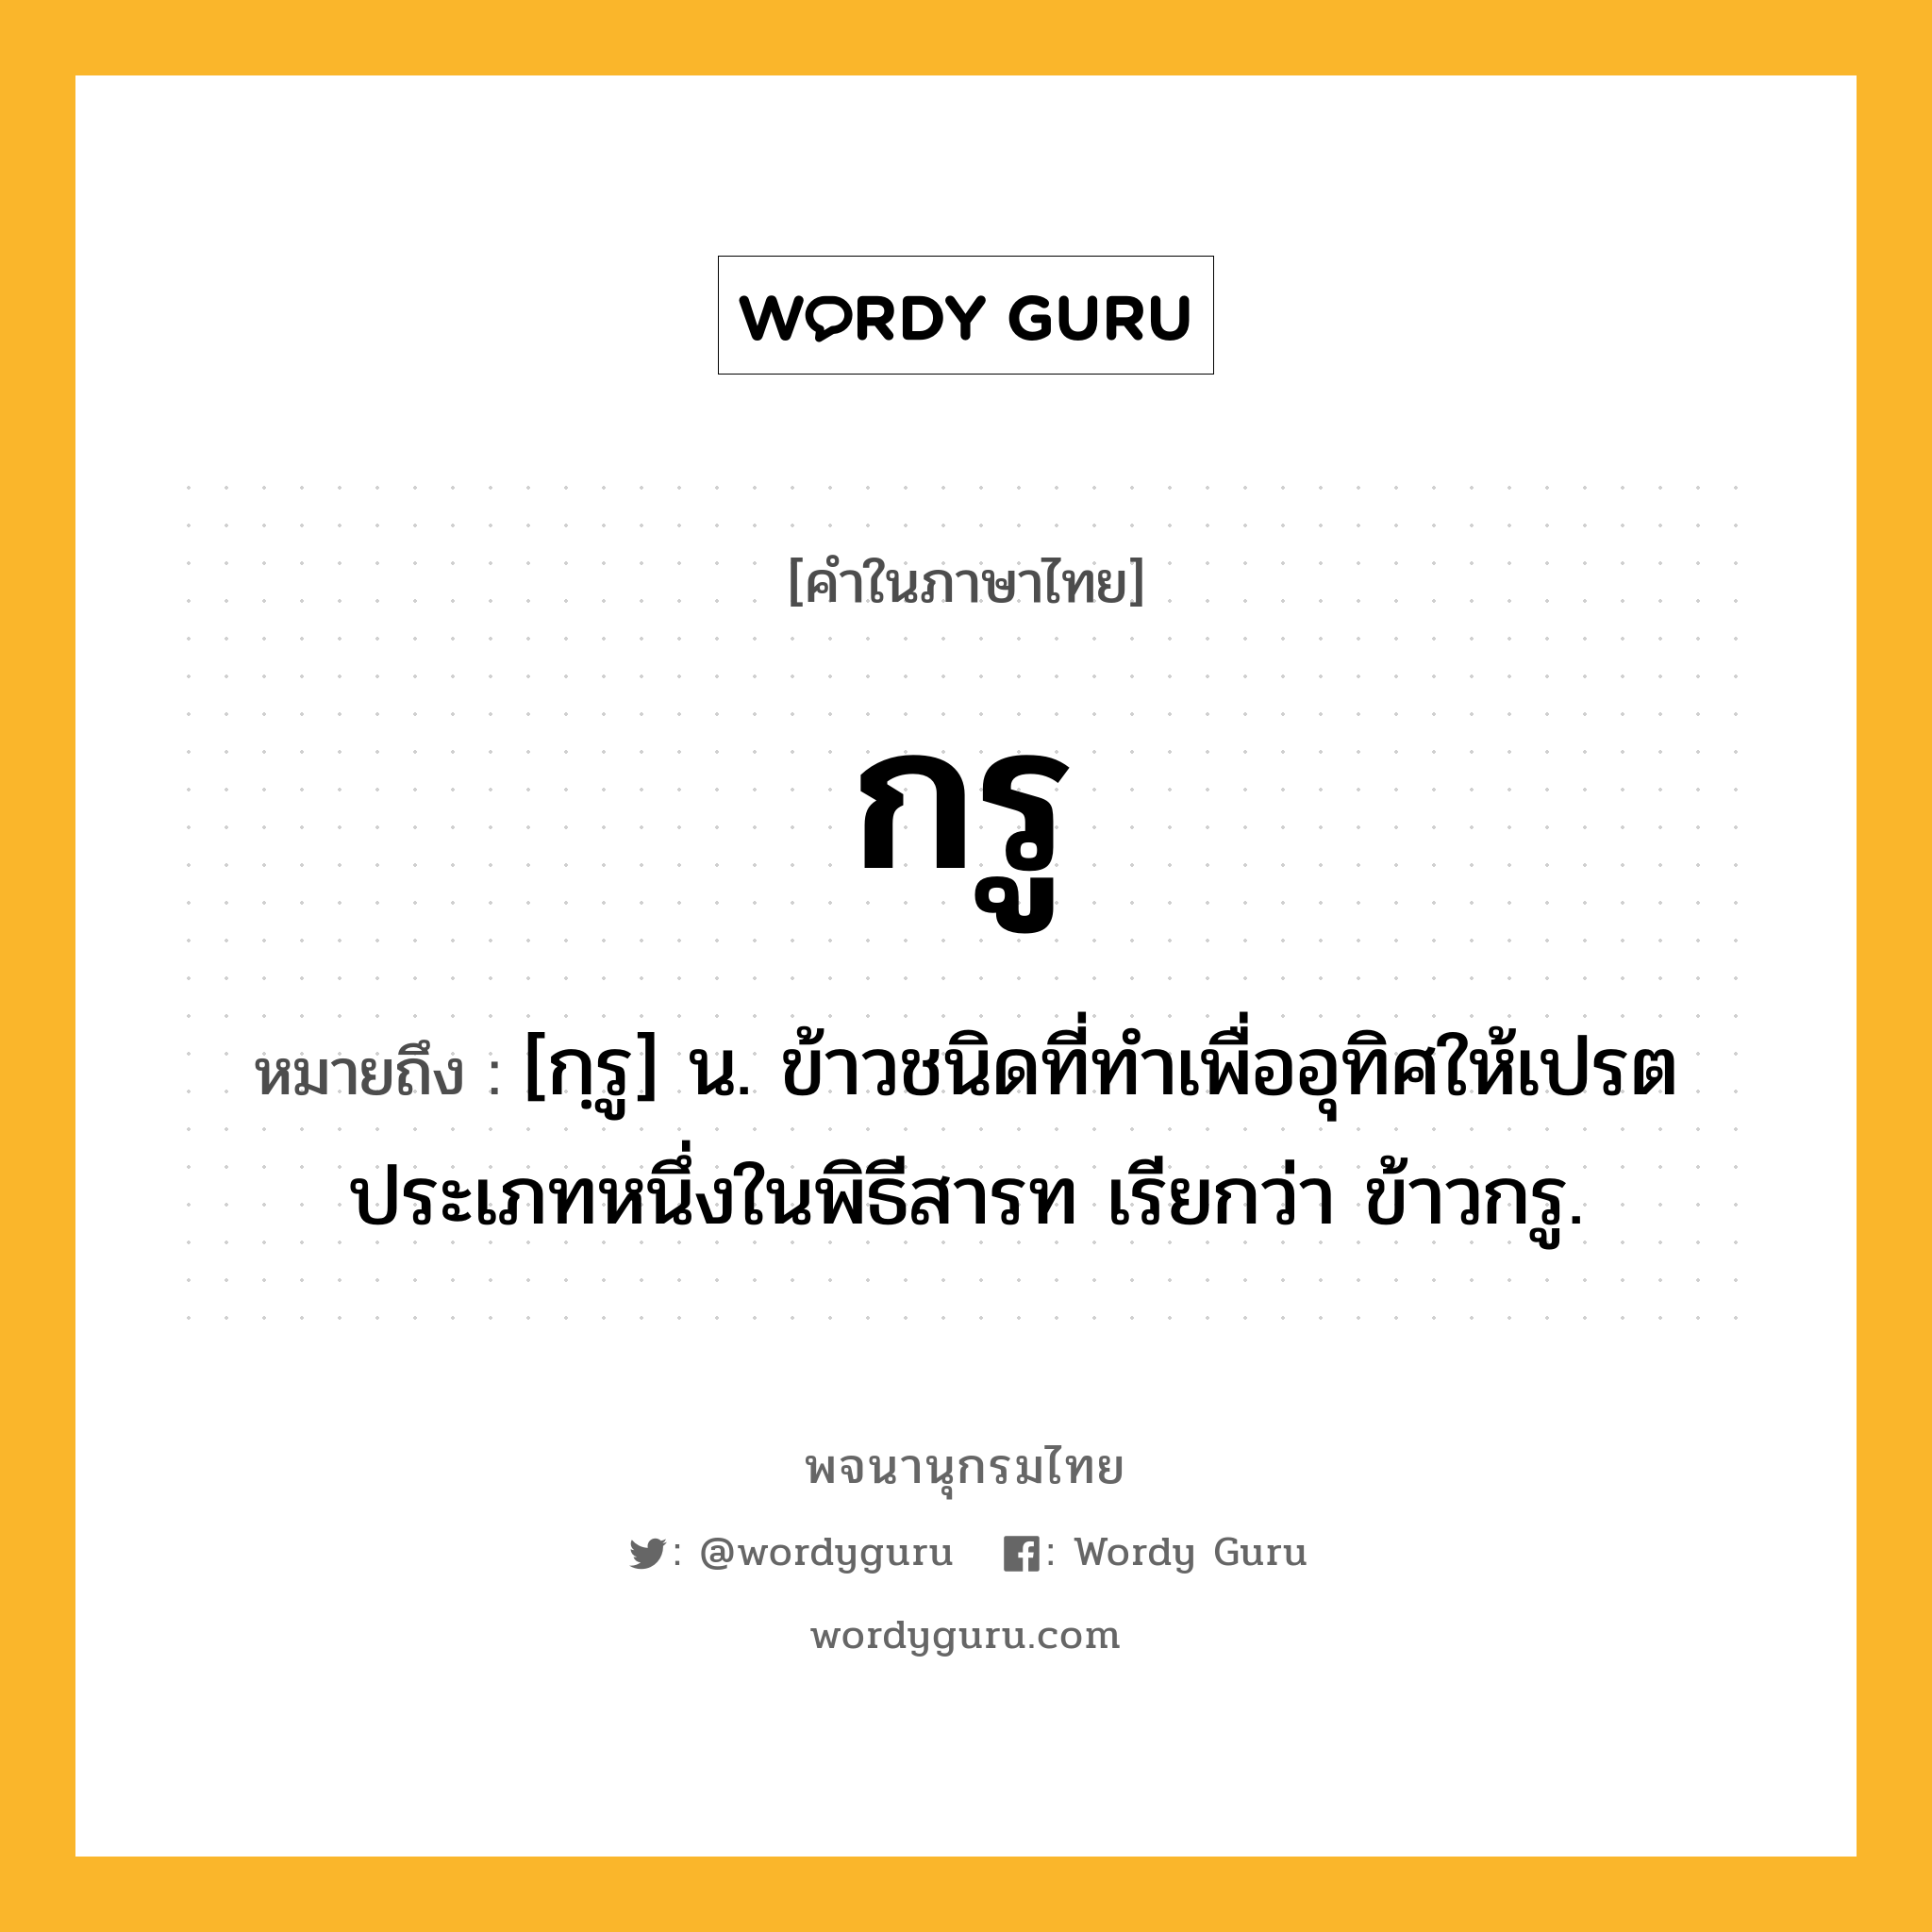 กรู หมายถึงอะไร?, คำในภาษาไทย กรู หมายถึง [กฺรู] น. ข้าวชนิดที่ทําเพื่ออุทิศให้เปรตประเภทหนึ่งในพิธีสารท เรียกว่า ข้าวกรู.